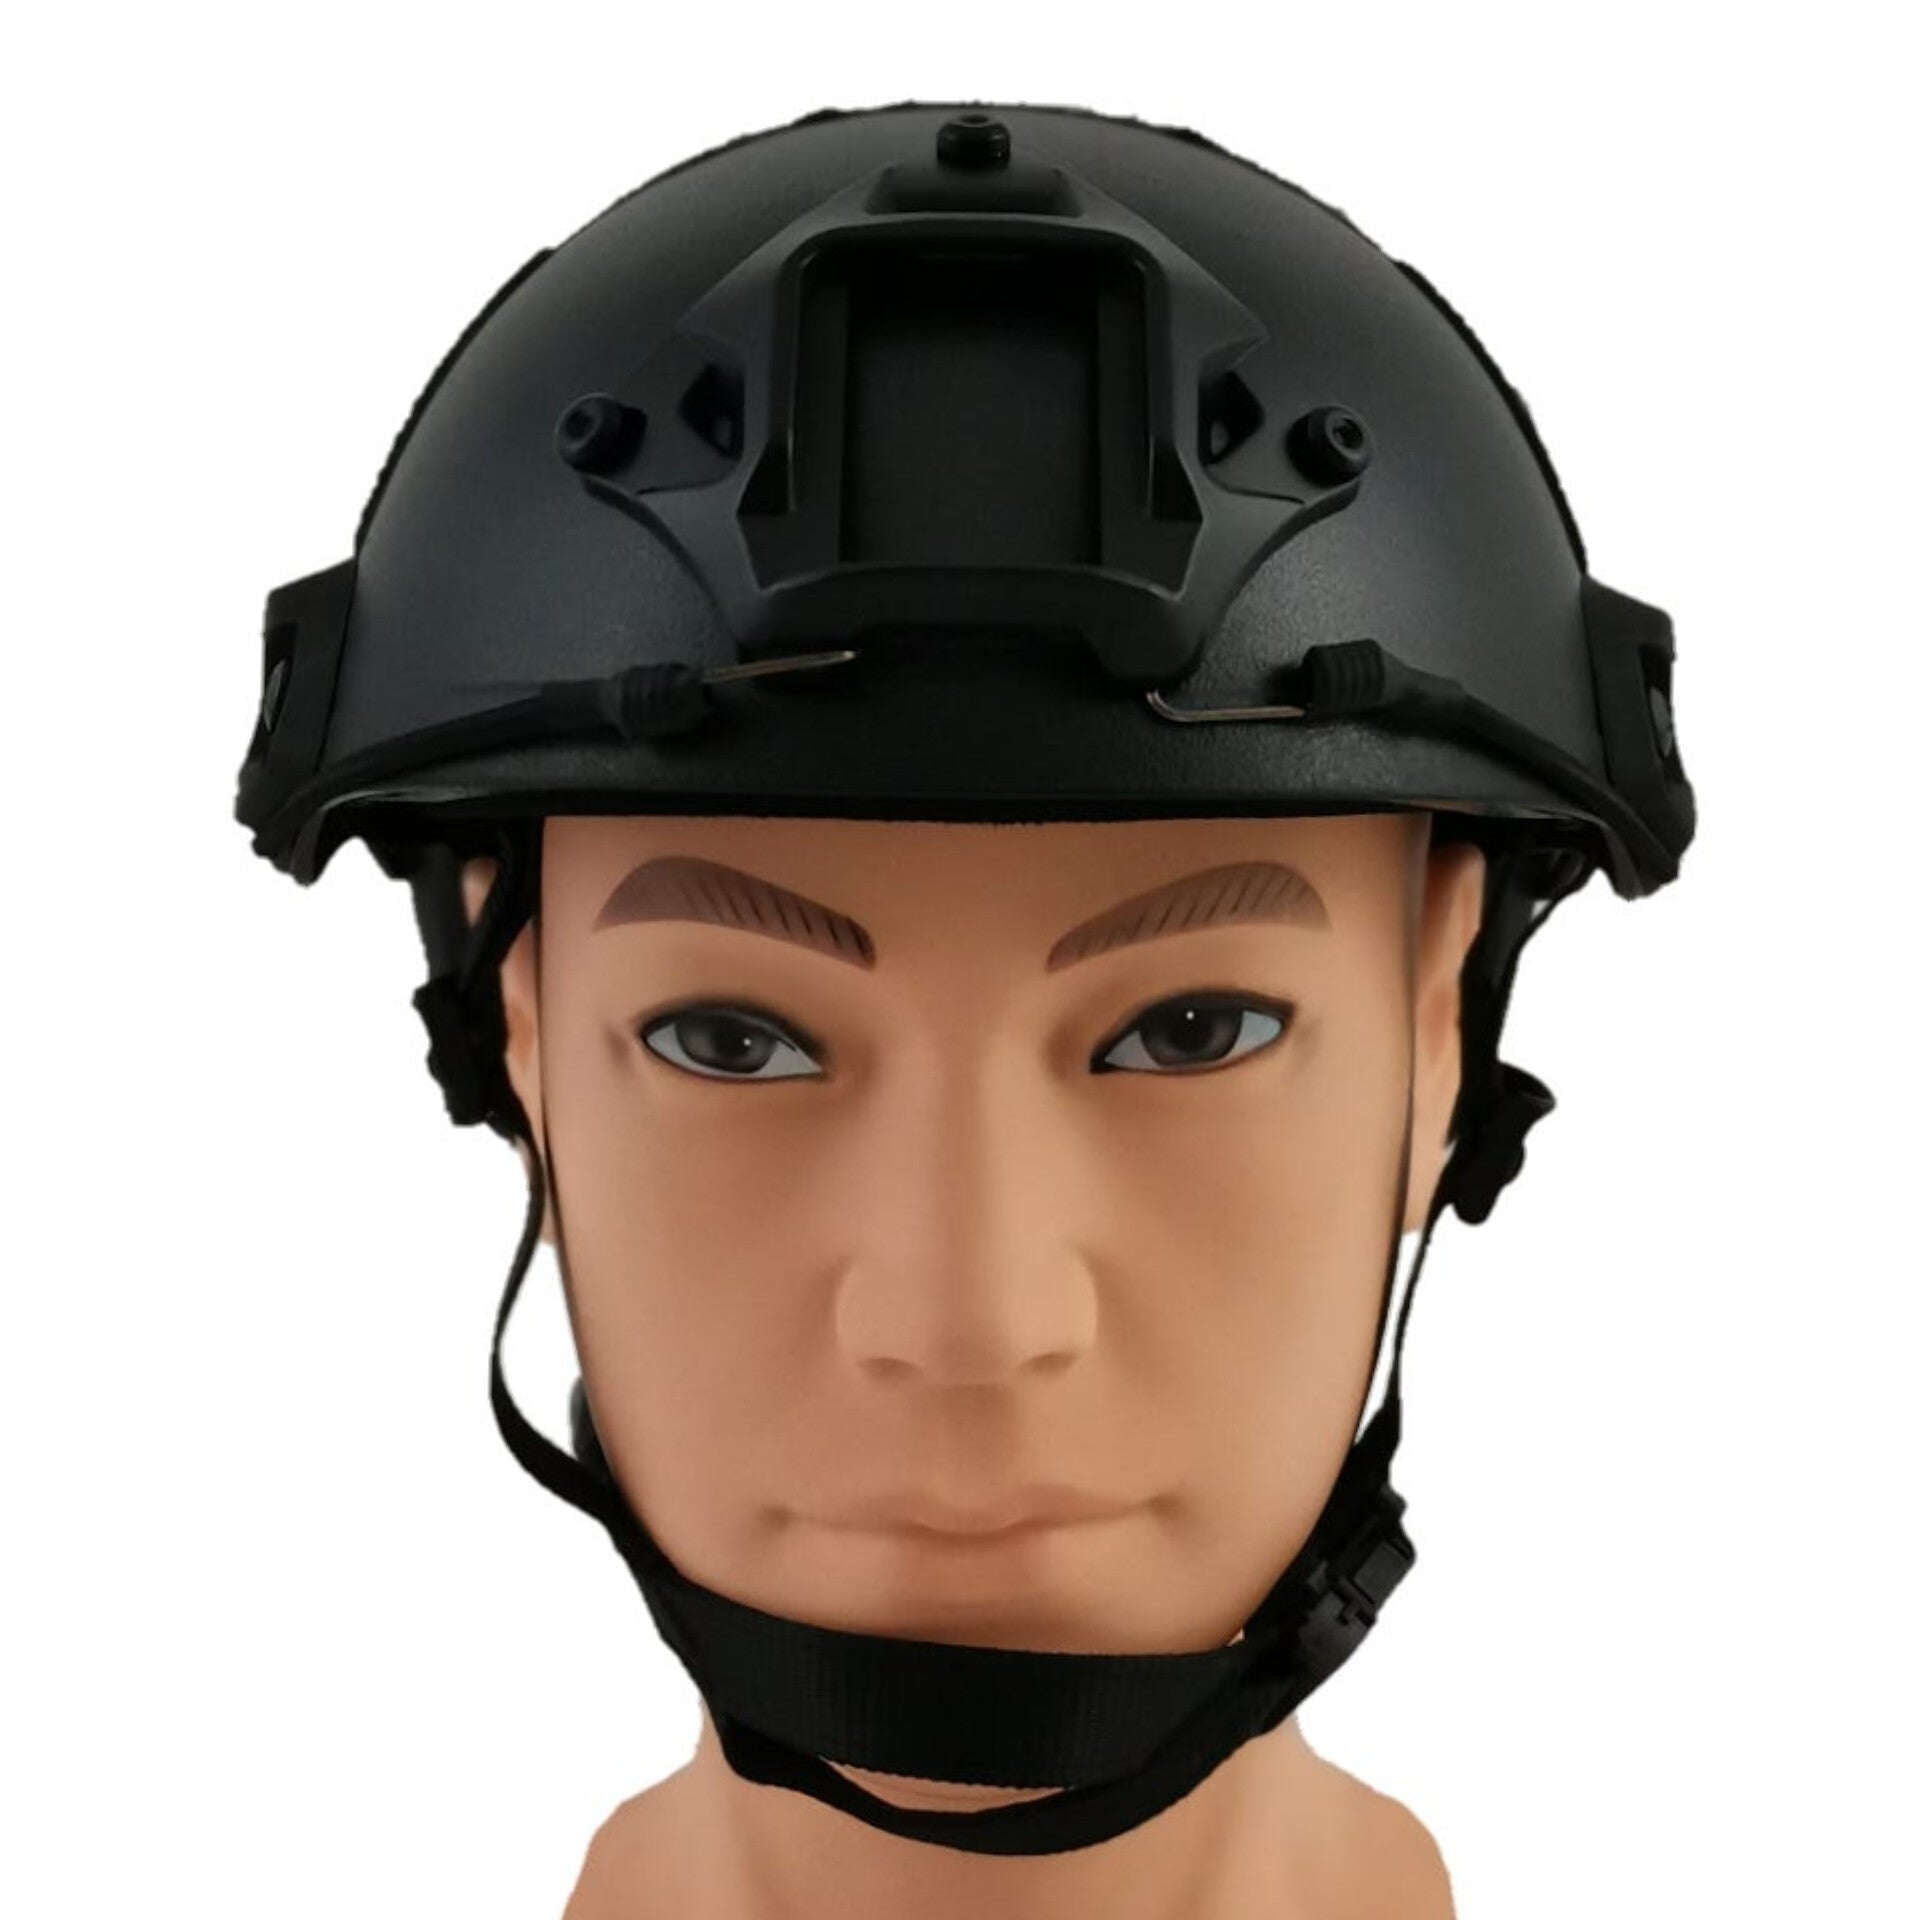 FAST Helmet - Black